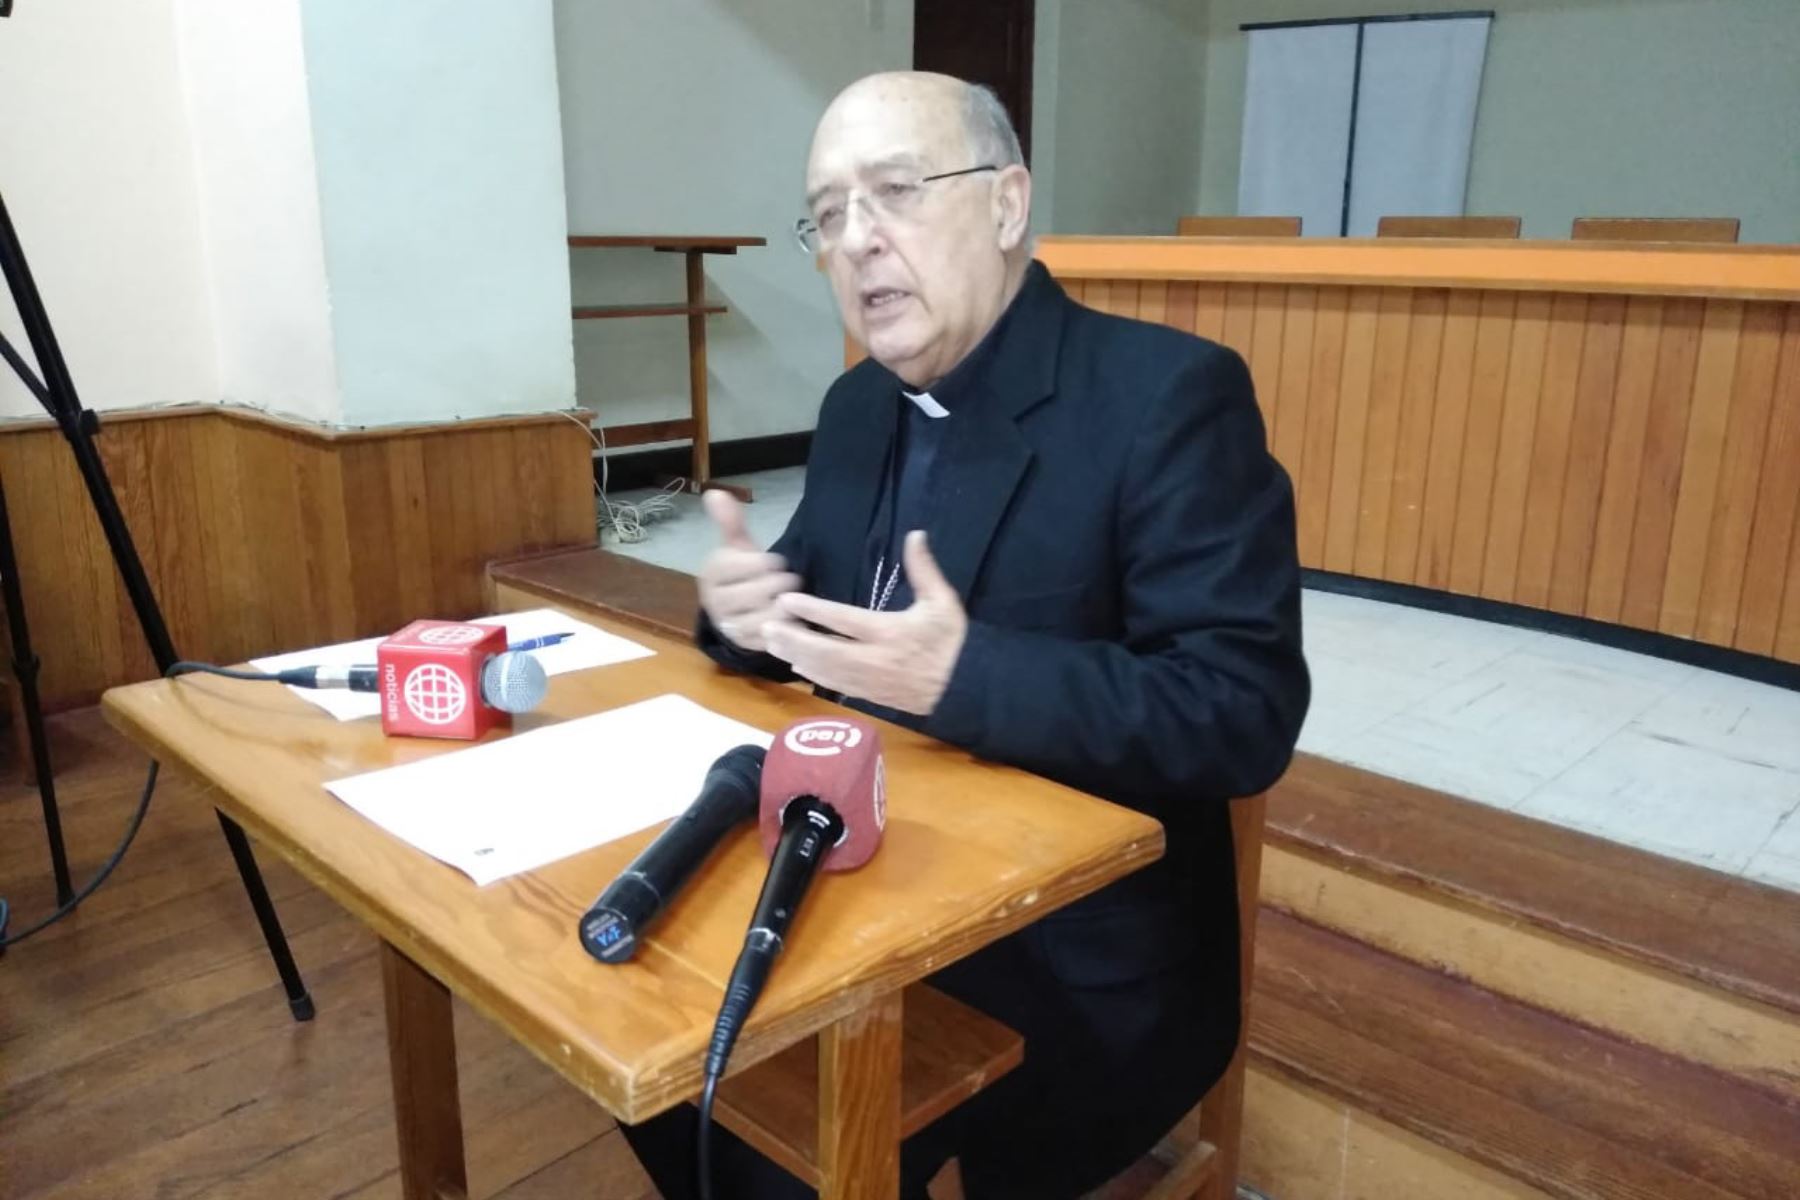 Peruánský kardinál Barreto: Musíme hledat cesty naděje uprostřed obtíží